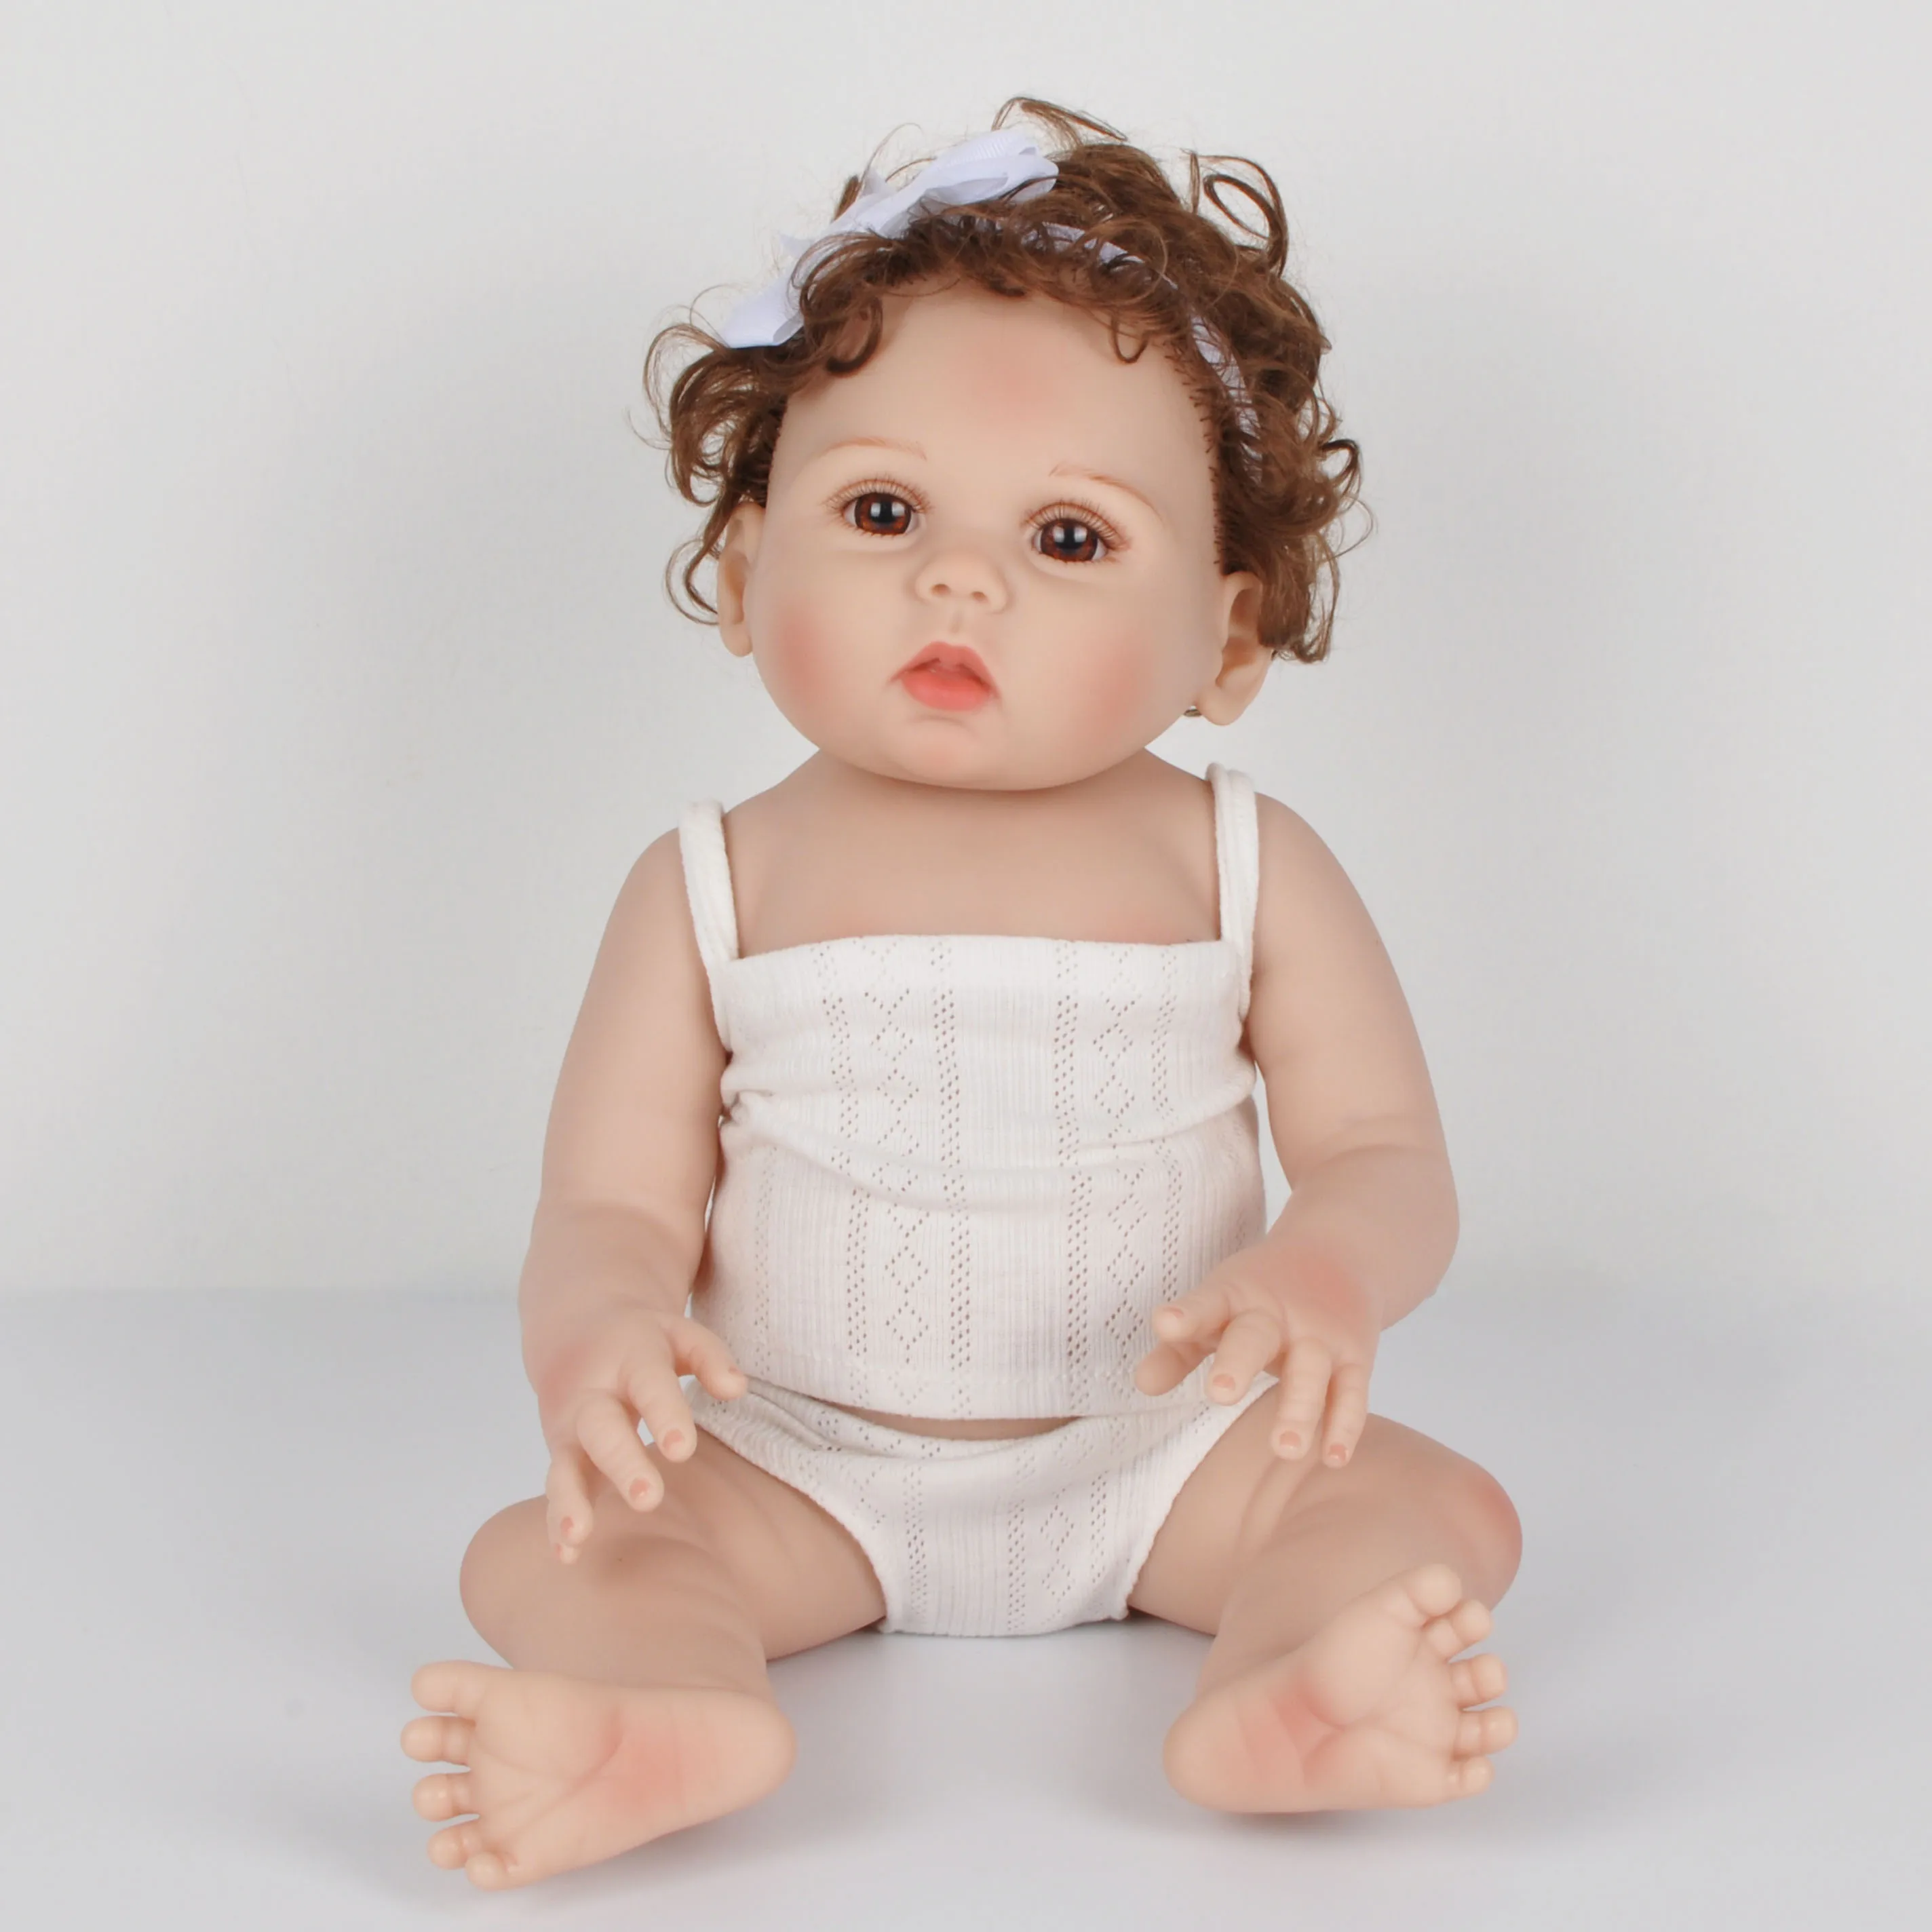 18 дюймов 47 см Reborn Baby Doll полностью силиконовая Bebe Bonecas Реалистичная кукла Menino Рождественский подарок игрушки для детей